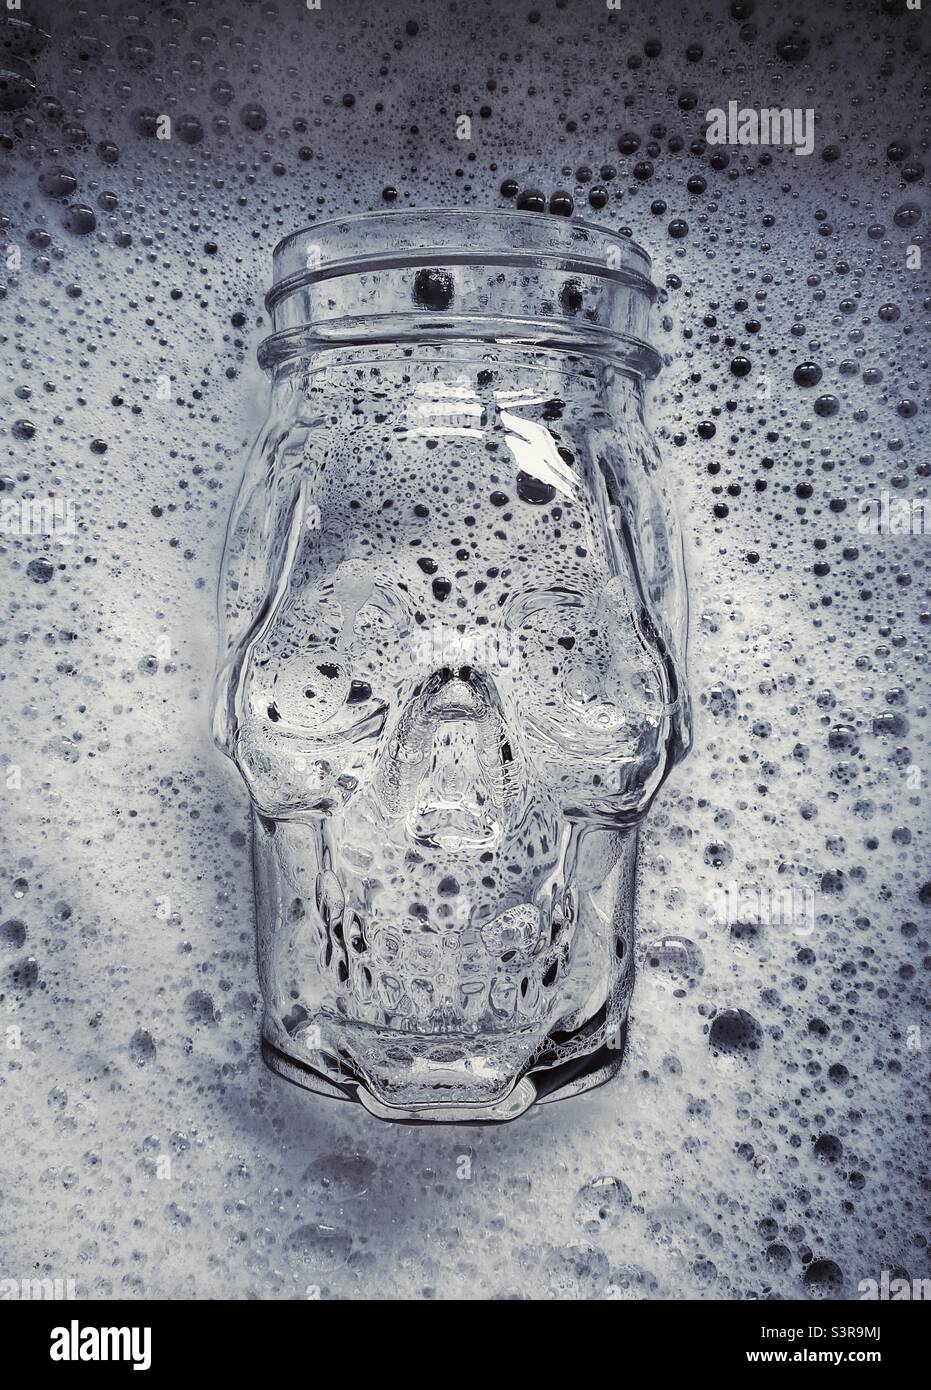 Una fotografia ravvicinata di un vaso di vetro a forma di cranio, parzialmente immerso in una ciotola di acqua saponata. Bianco e nero Foto Stock